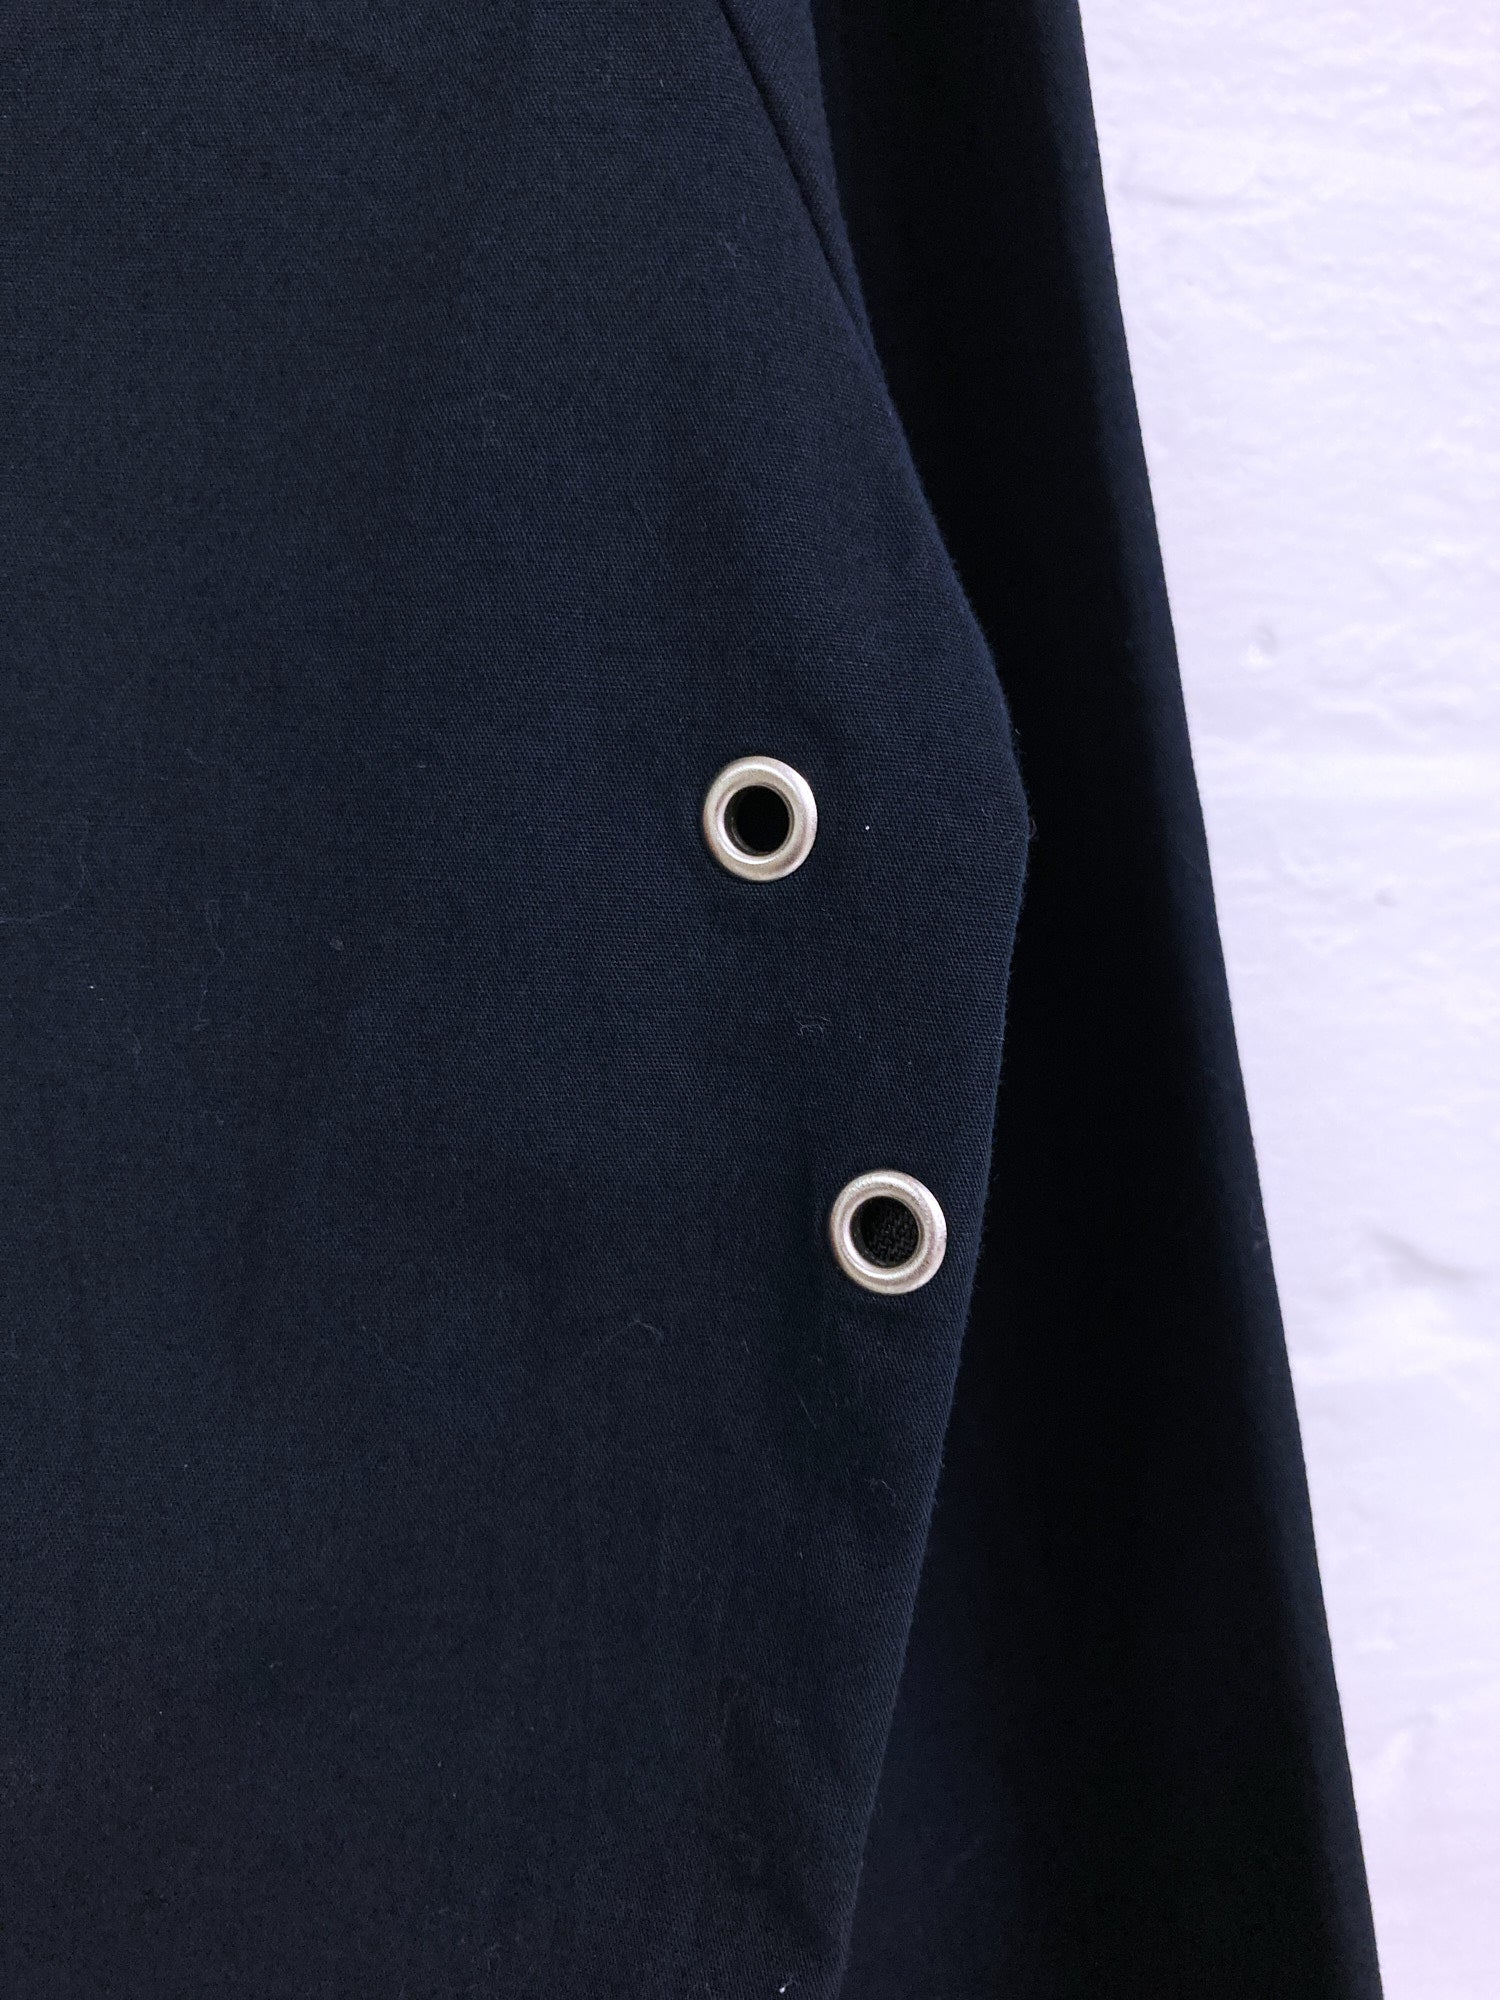 Jean Colonna black cotton funnel neck pullover windbreaker - size 48